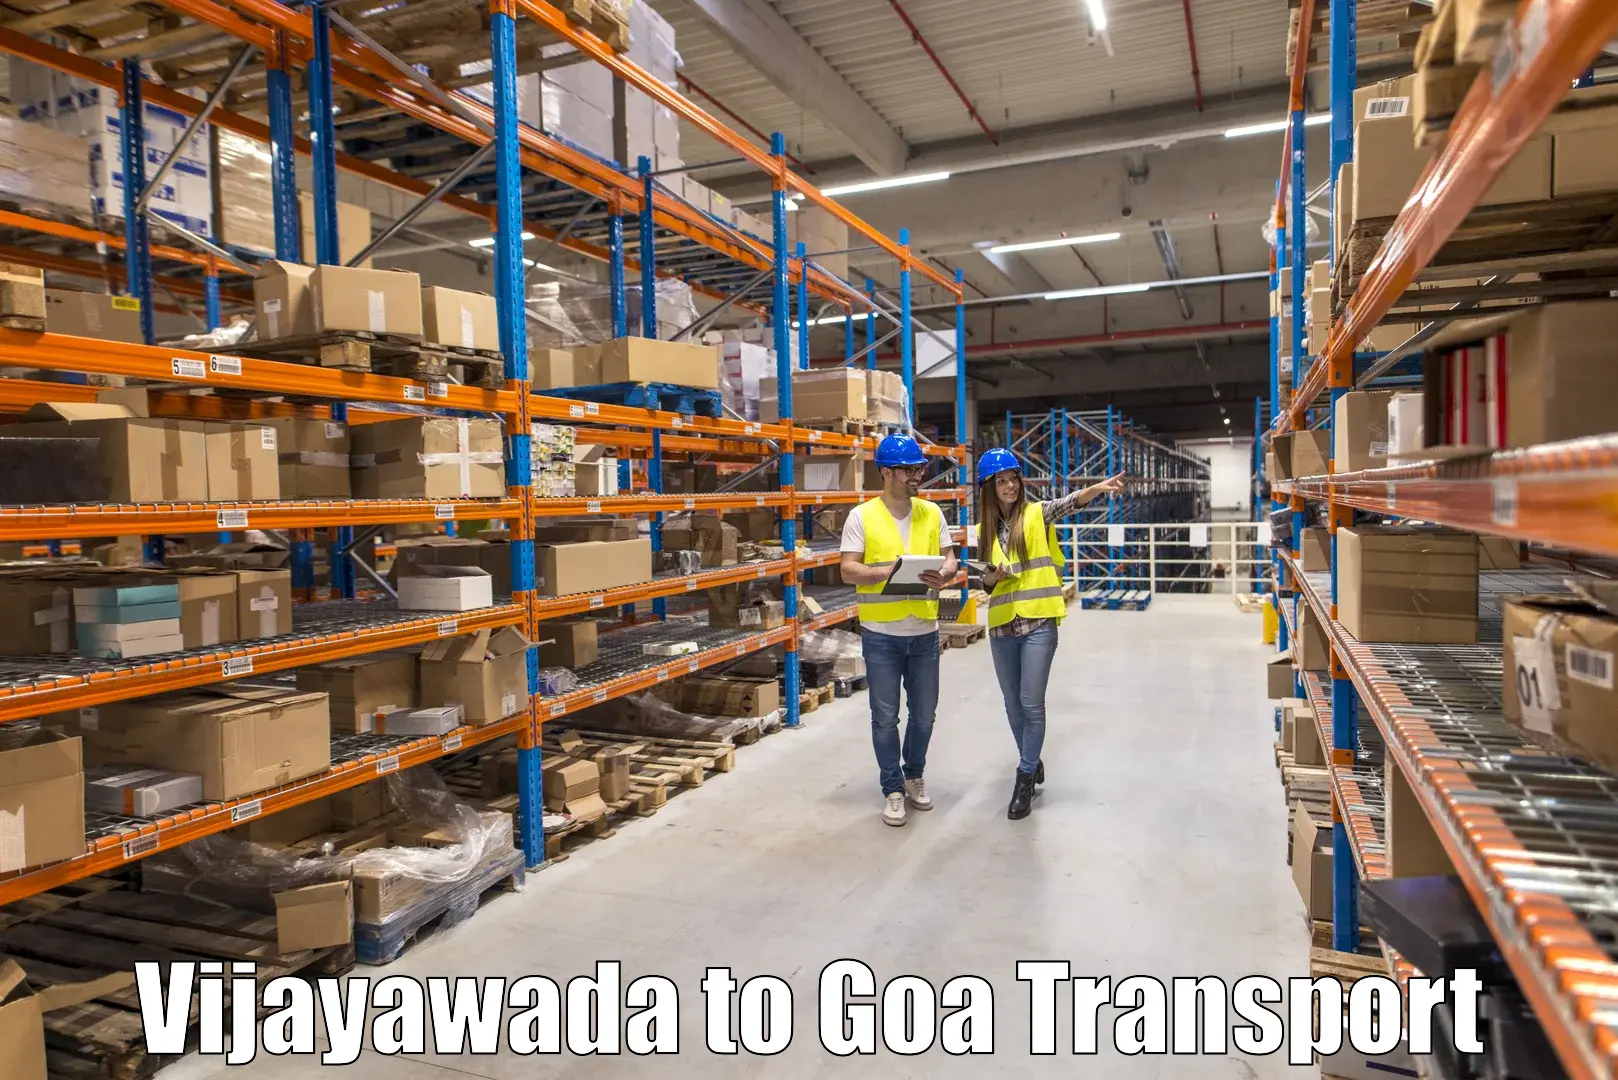 Pick up transport service Vijayawada to Canacona